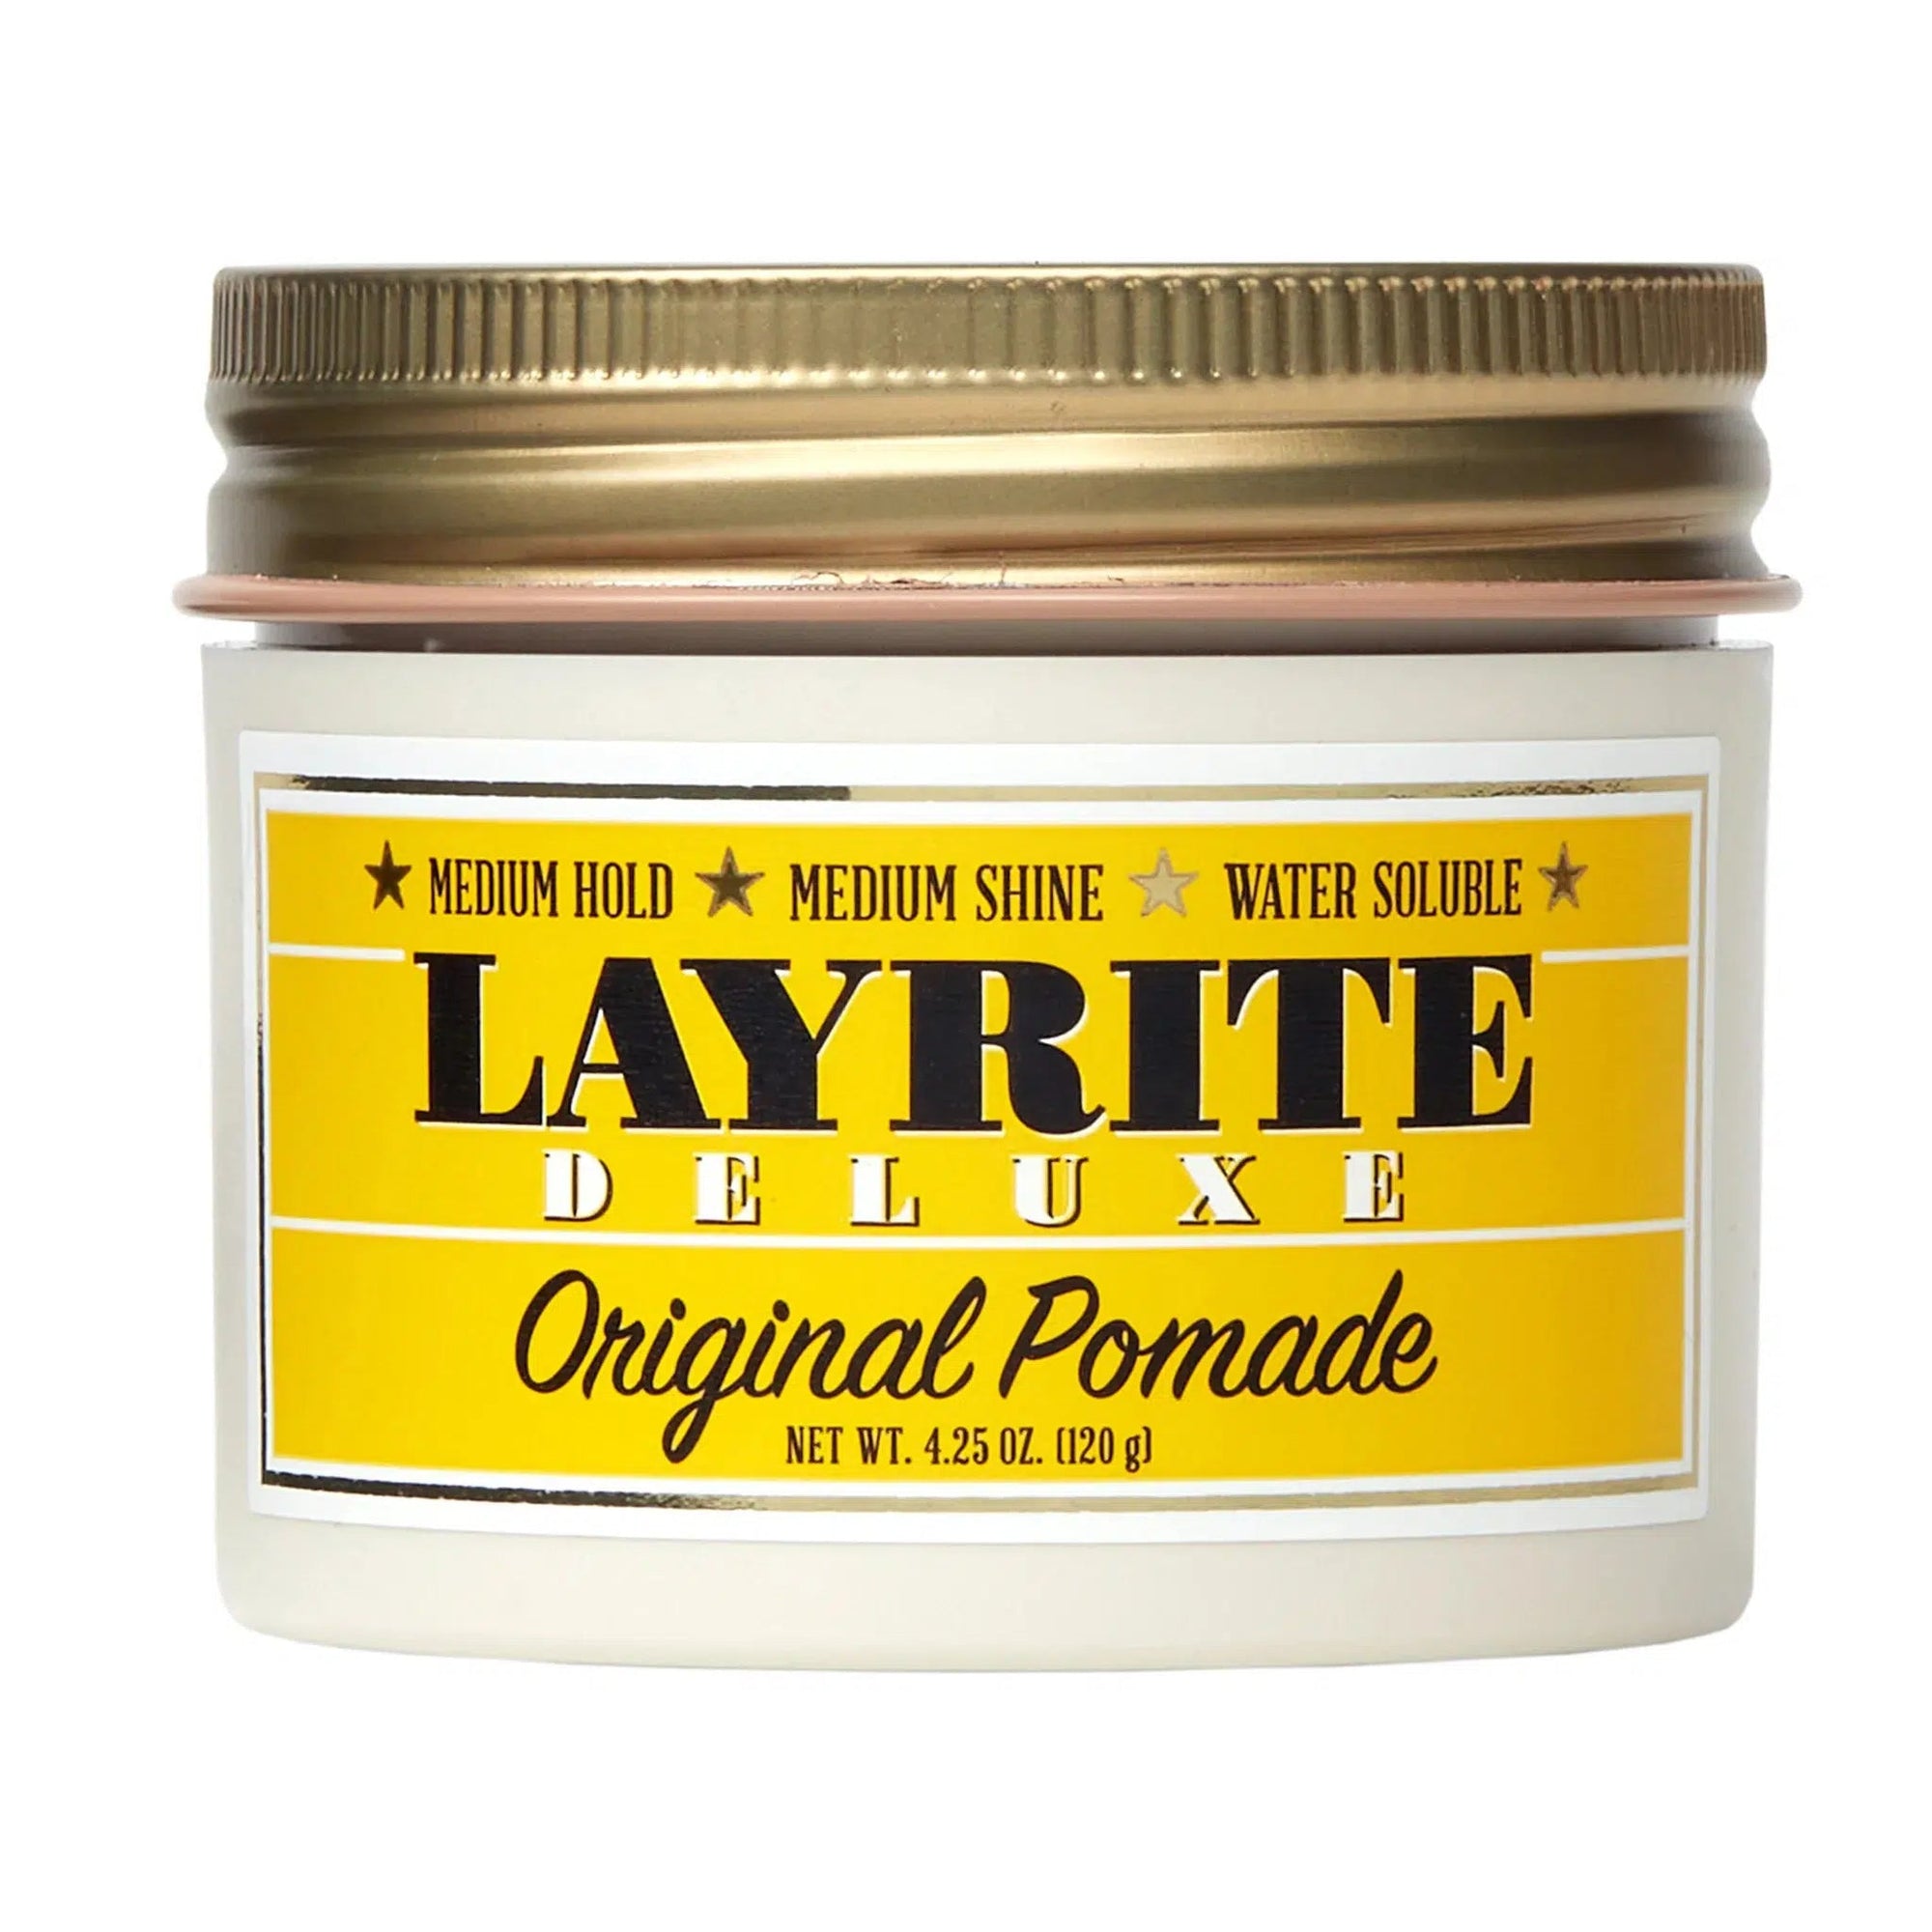 Layrite Original Pomade 113gr